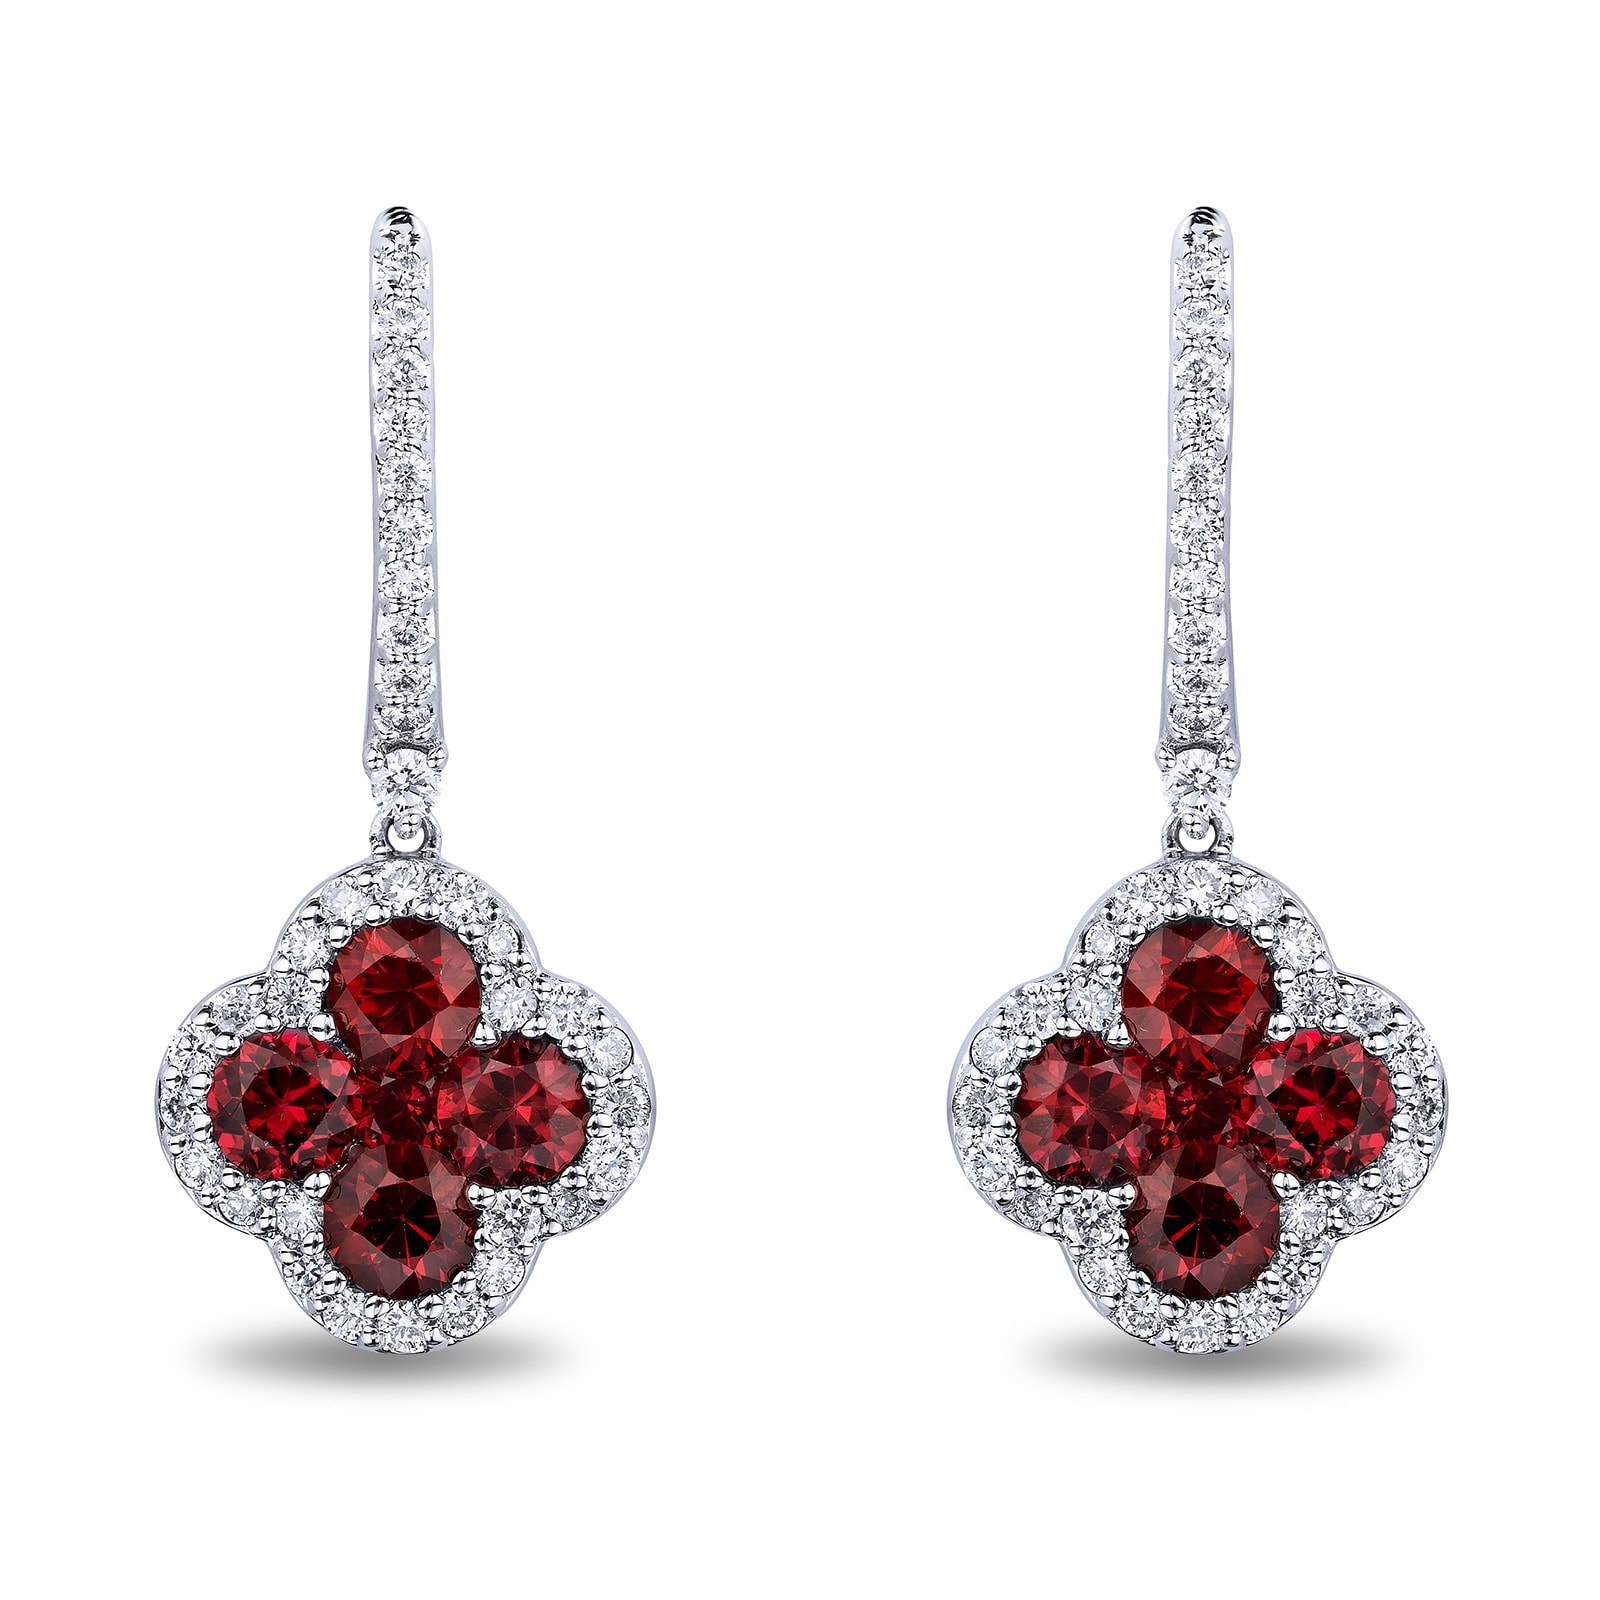 Ruby, Gemstones, Jewelry